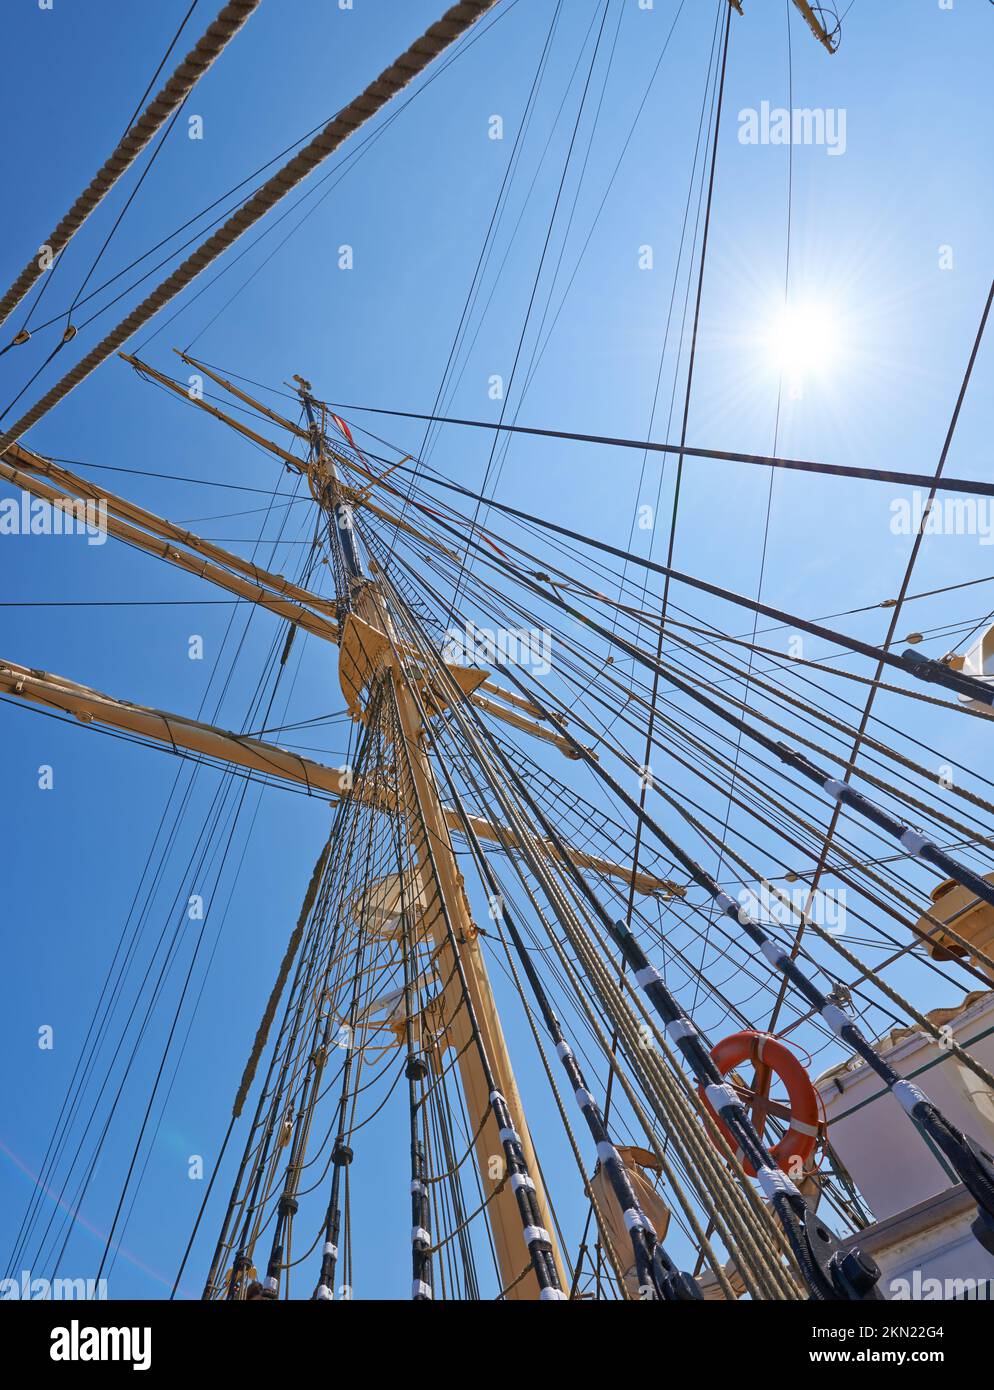 Detaillierte Schiffsabrisse. Der Mast und die Ausrüstung eines komplizierten nautischen Schiffes. Stockfoto